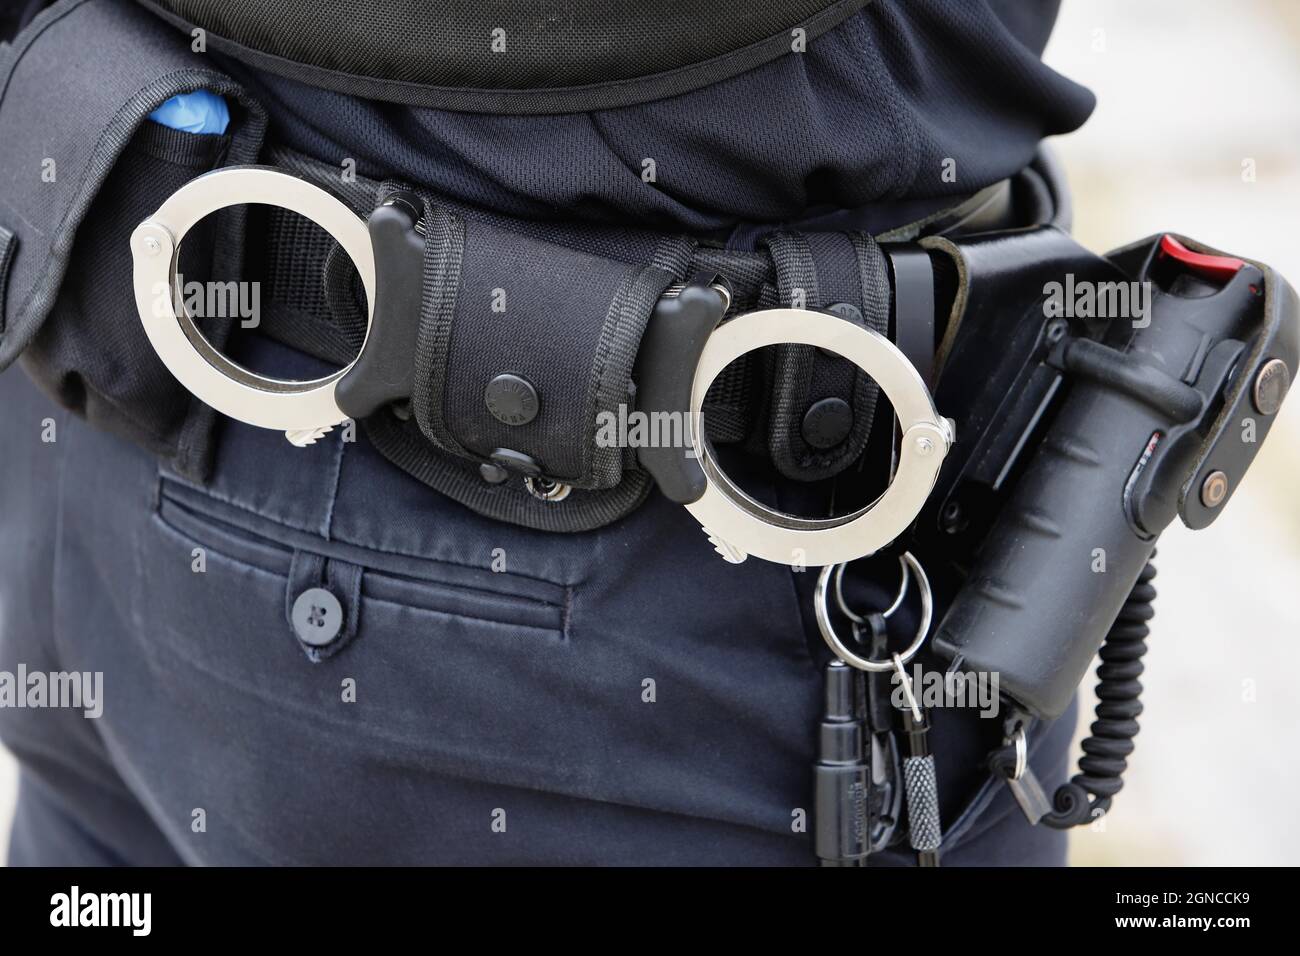 El Cinturón De Policía Con La Pistola Y Las Esposas Fotos, retratos,  imágenes y fotografía de archivo libres de derecho. Image 48202808